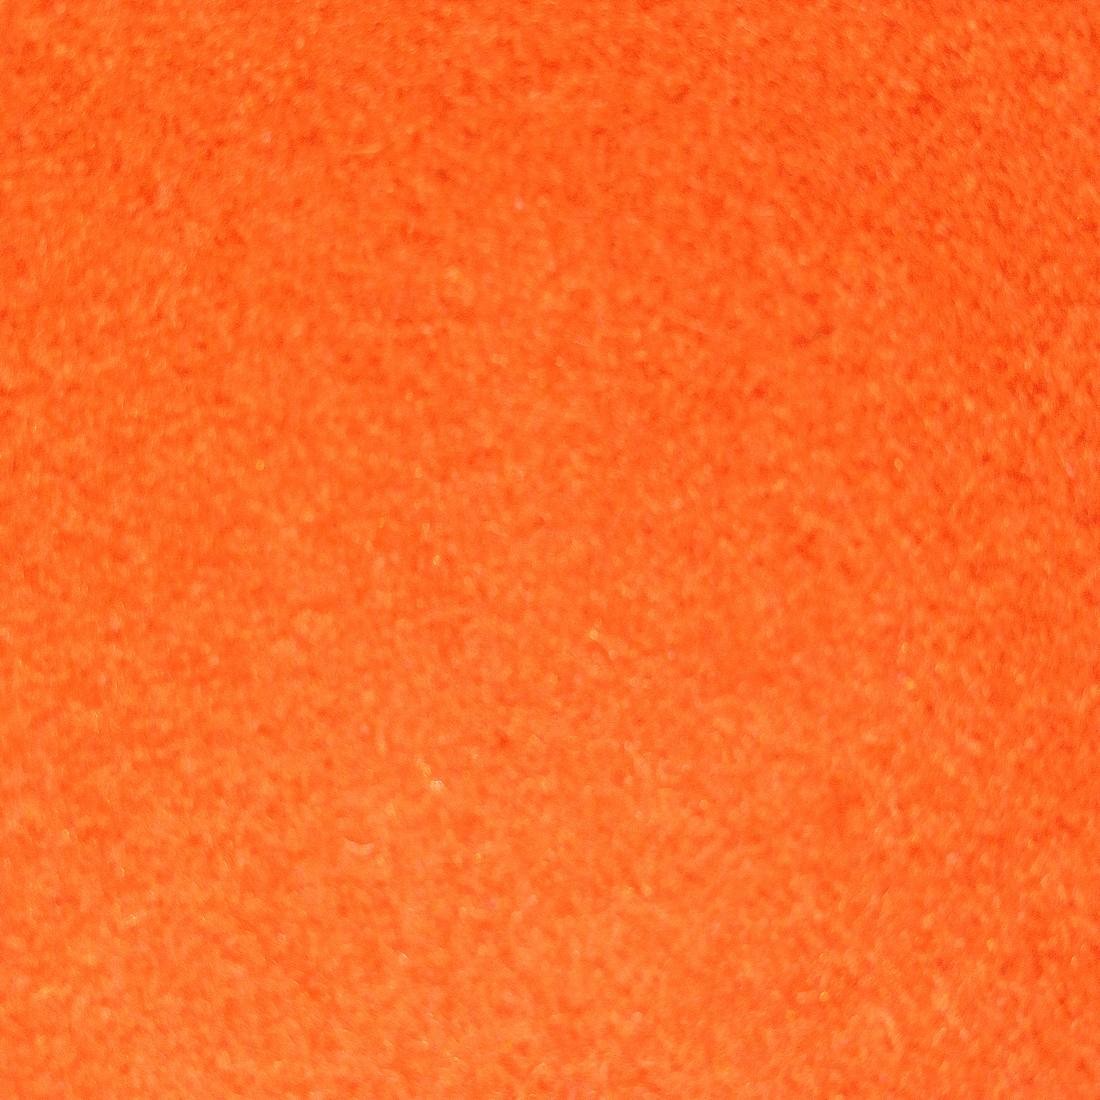 14-891-tfl Leisure Perma-guard Cloth 2, Orange